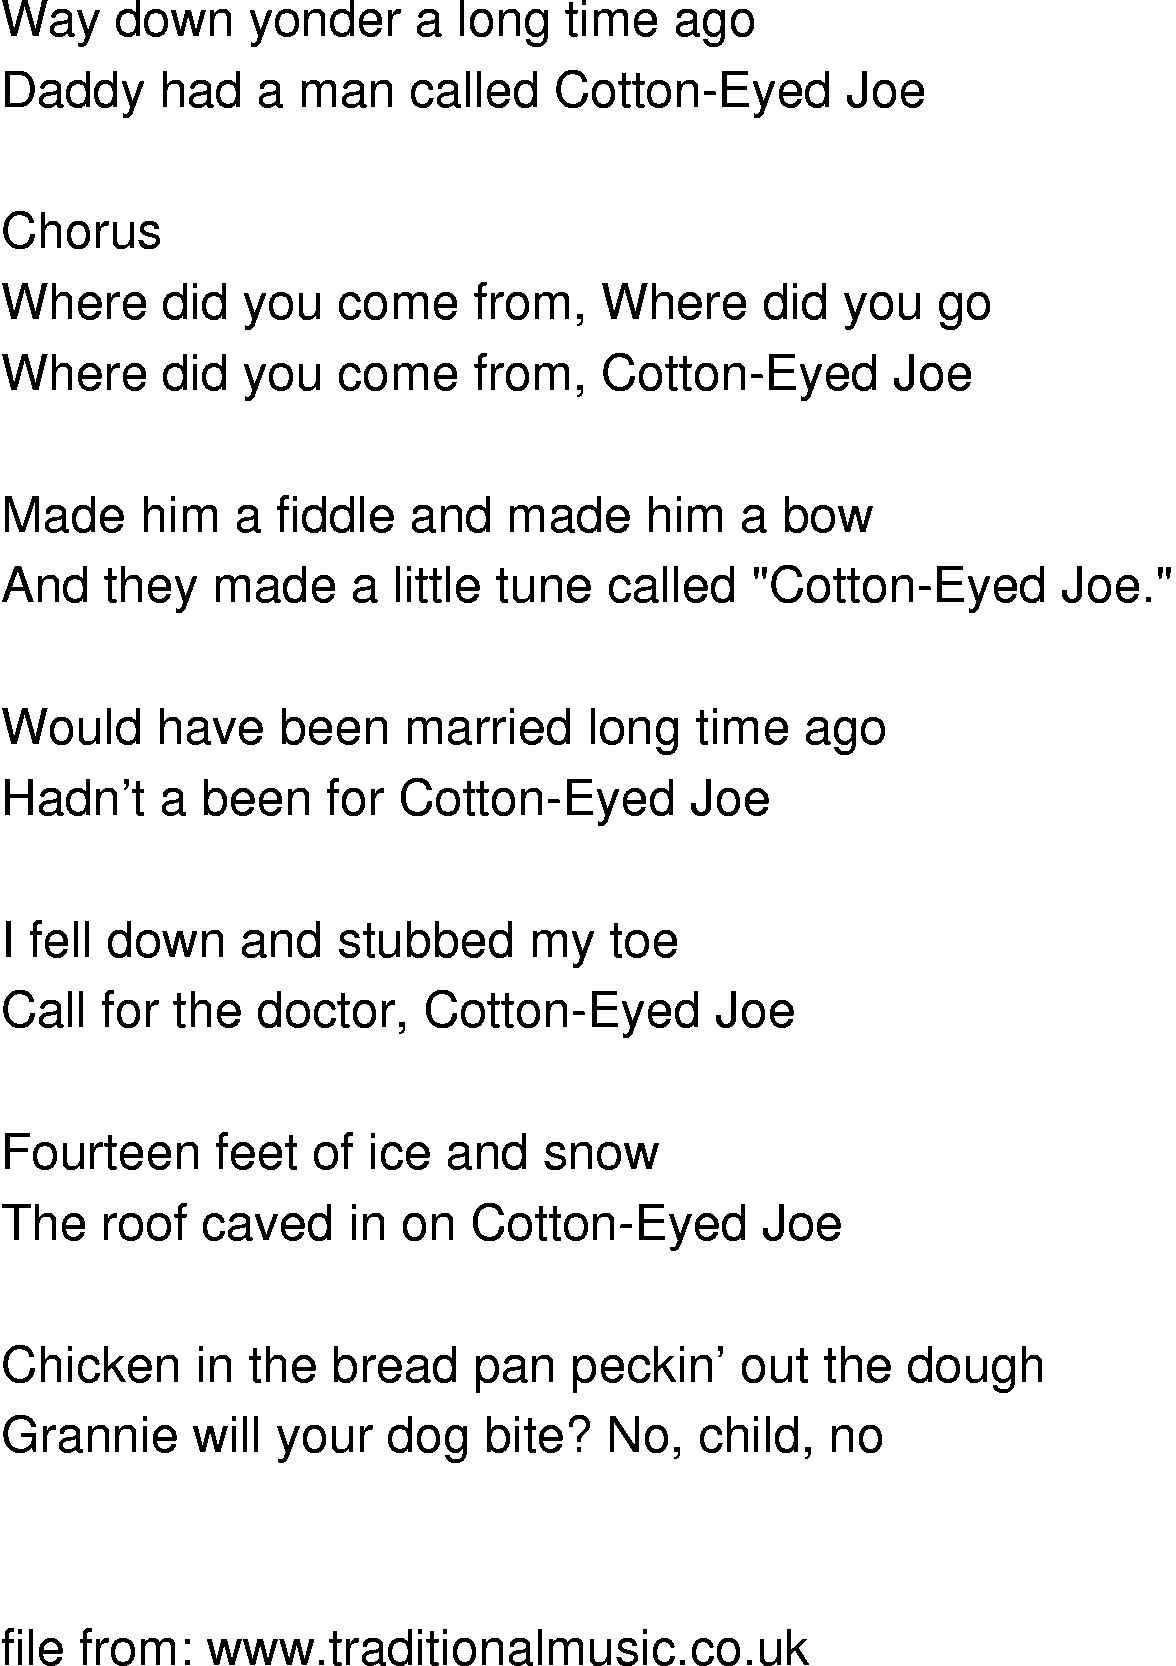 Песня джо ватный глаз. Cotton-eyed Joe текст. Cotton Eye Joe перевод. Rednex Cotton Eye Joe текст. Текст песни Cotton Eye Joe.